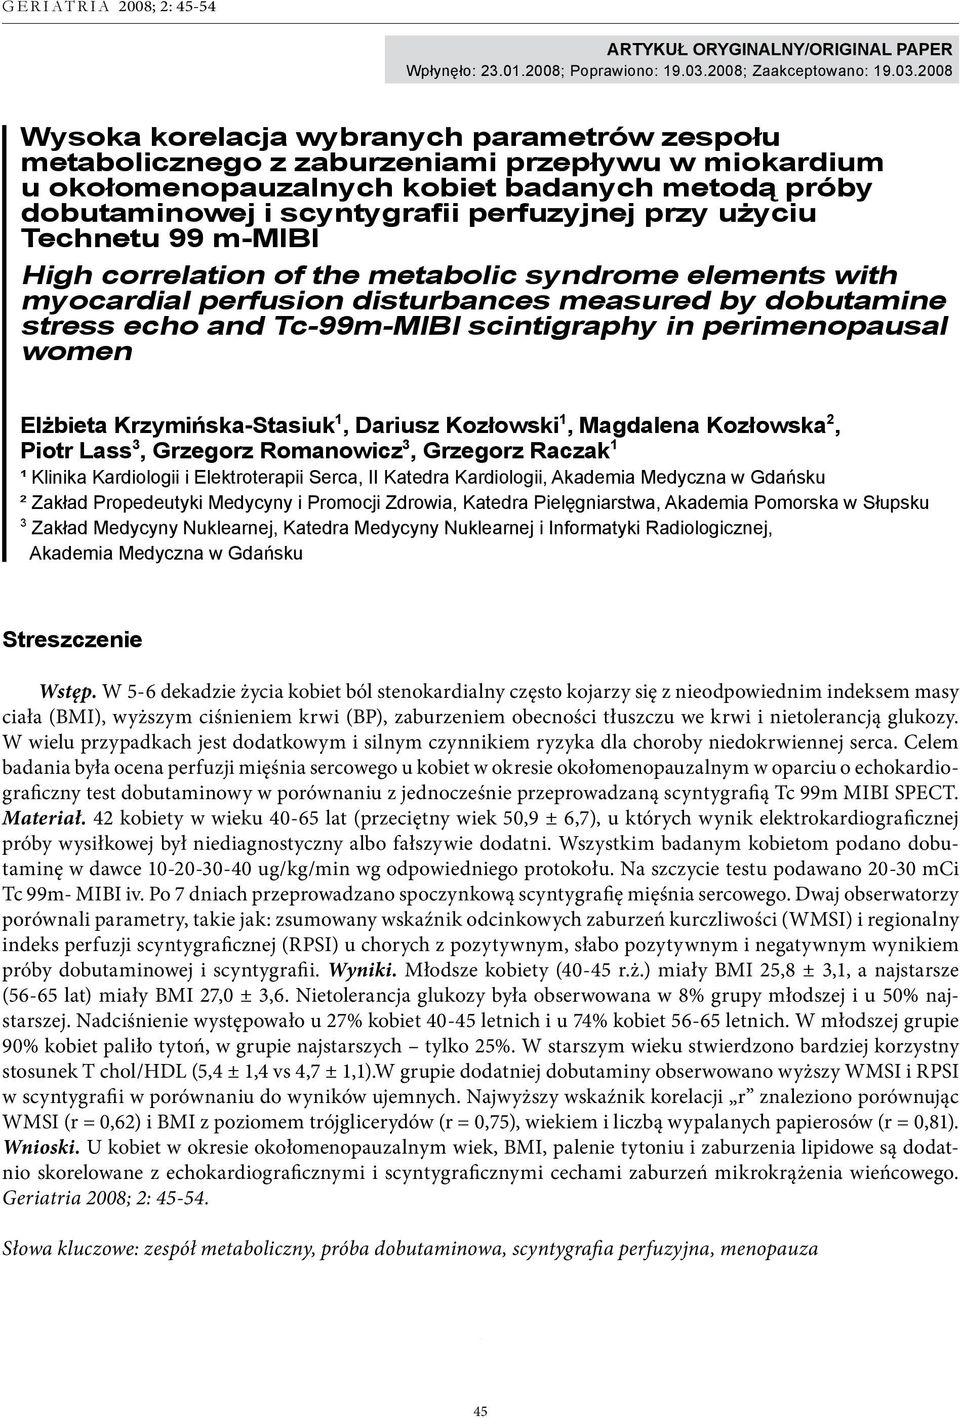 2008 Wysoka korelacja wybranych parametrów zespołu metabolicznego z zaburzeniami przepływu w miokardium u okołomenopauzalnych kobiet badanych metodą próby dobutaminowej i scyntygrafii perfuzyjnej